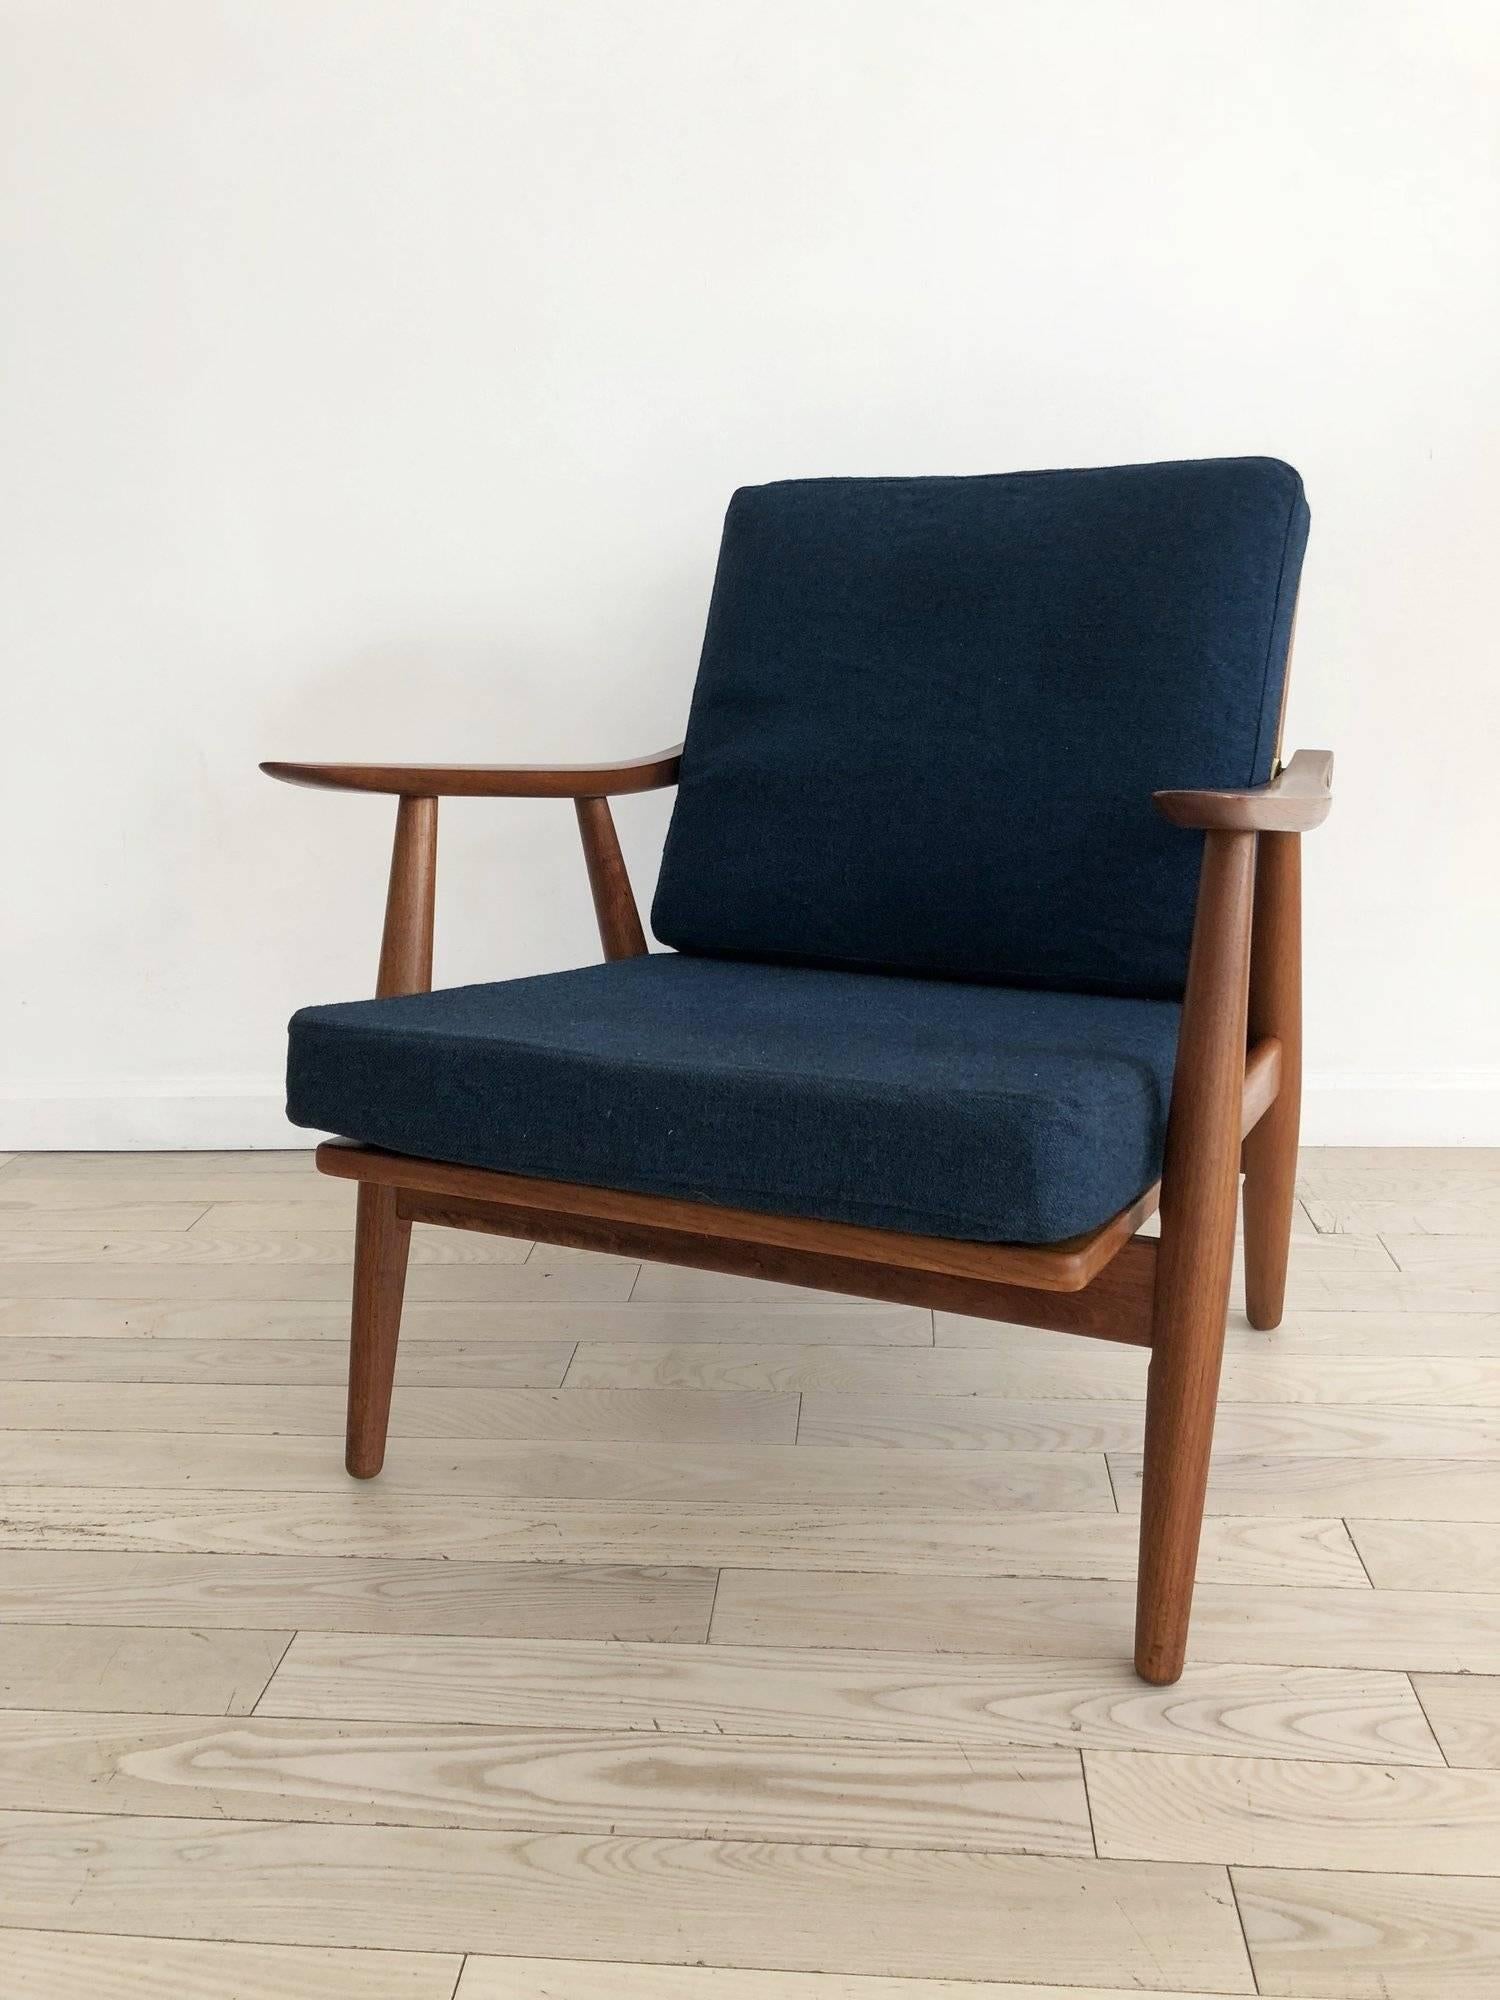 Mid-Century Modern Early Hans J Wegner GE-270 Easy Chair in Teak, Made in Denmark